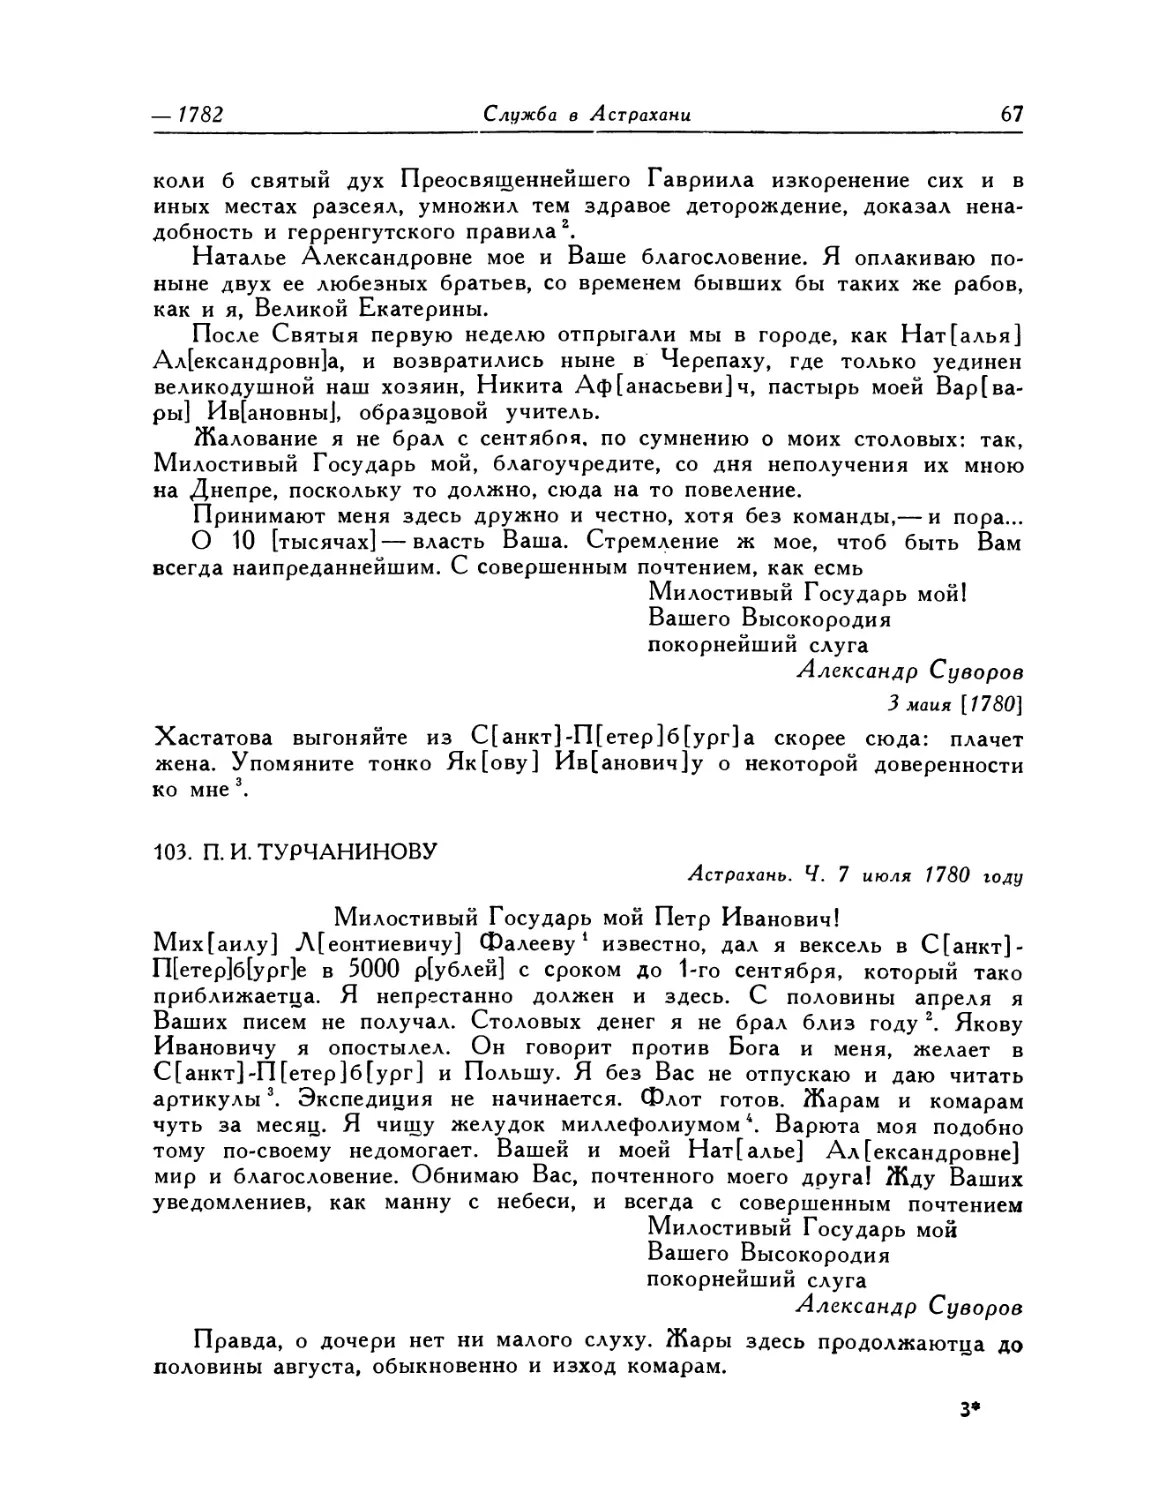 103. П. И. Турчанинову. 7.VII— 14.VII.1780